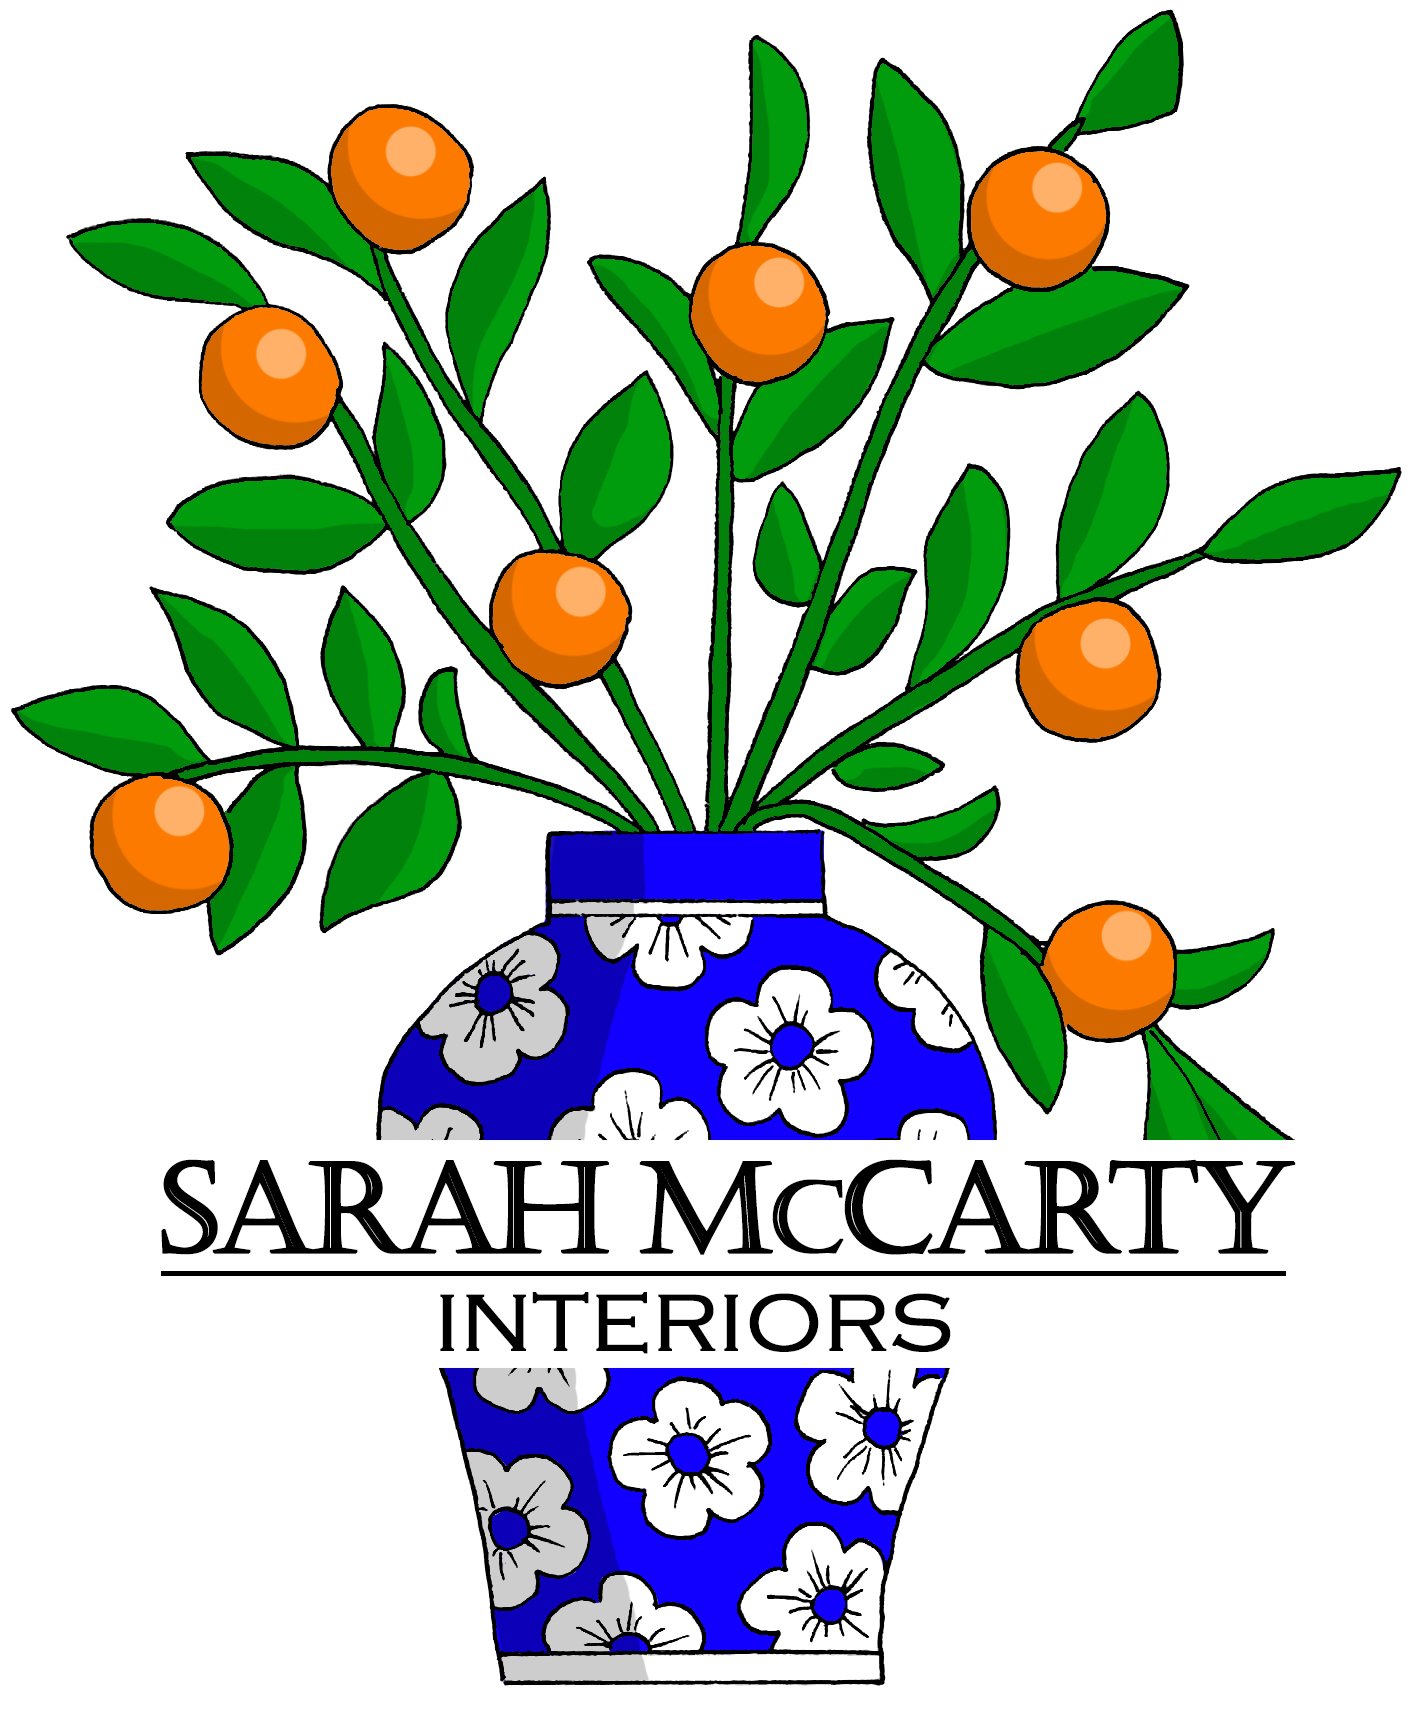 Sarah McCarty Interiors